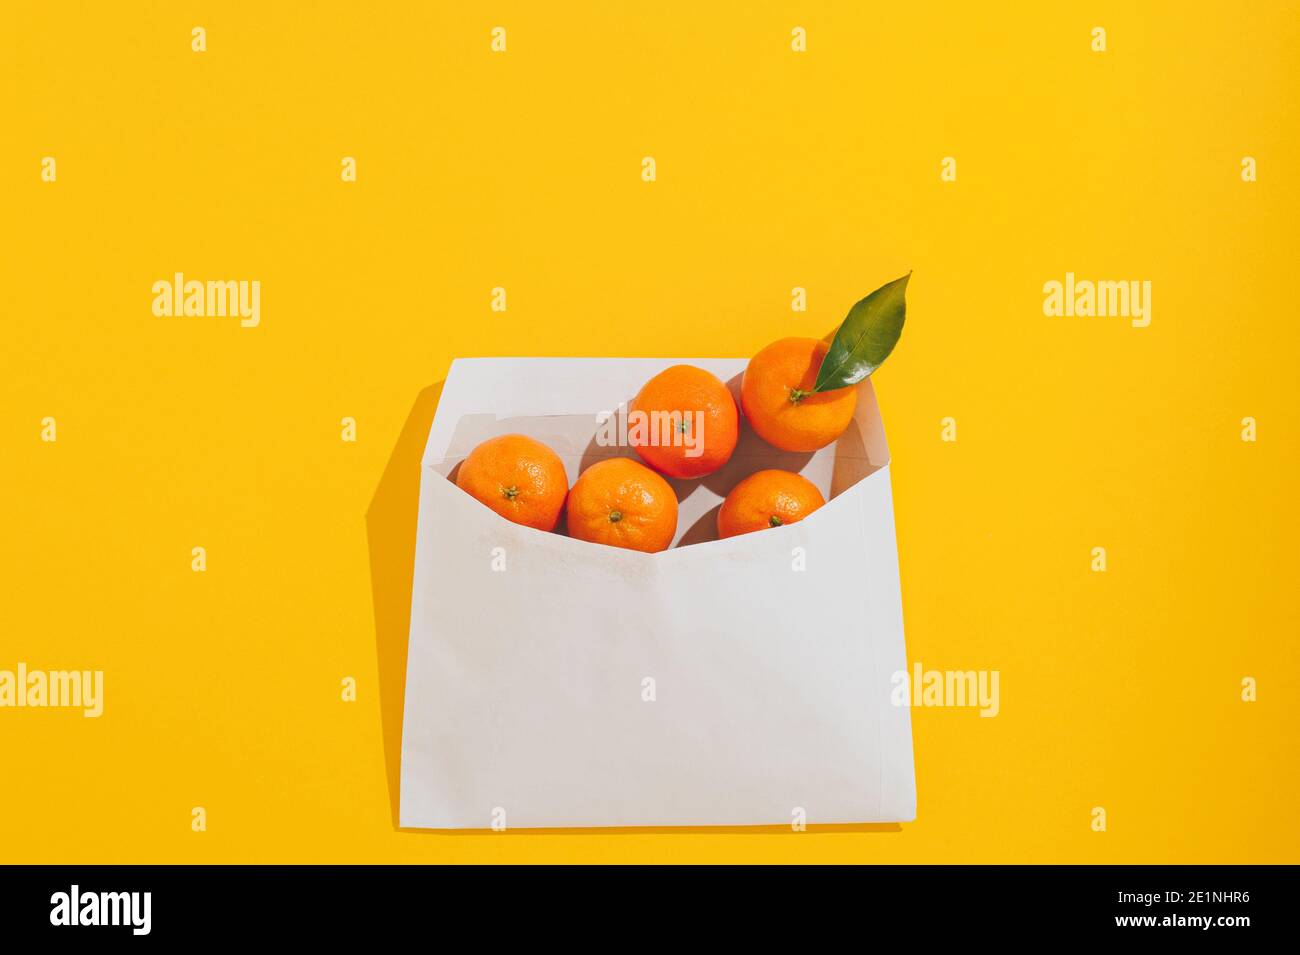 Mise en page créative réalisée avec des mandarines orange fraîches dans une enveloppe en papier sur fond jaune. Concept zéro déchet. Arrière-plan abstrait été ou hiver Banque D'Images